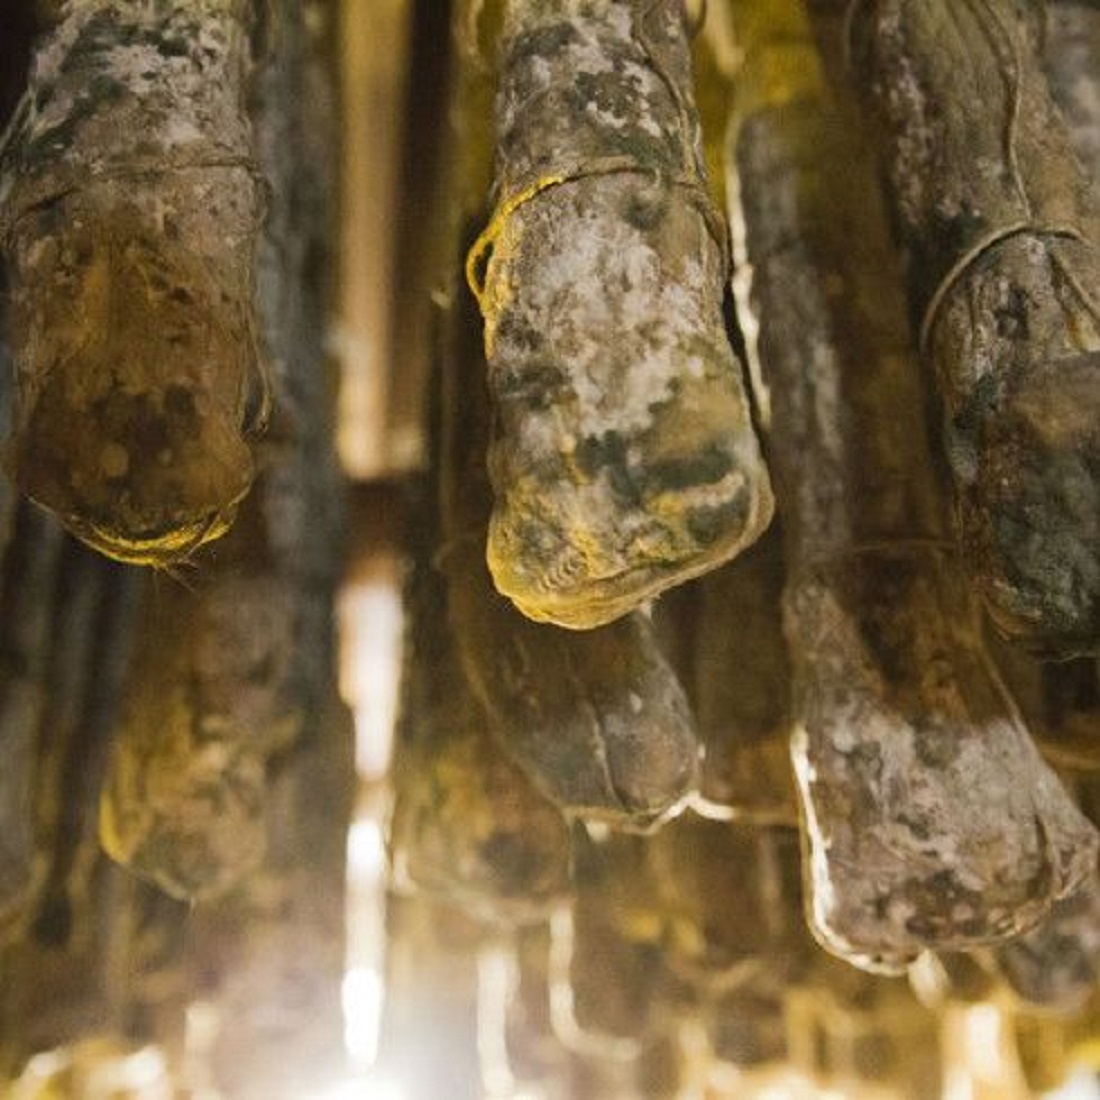 Salame Gentile in Naturkeller gereift - Typ Felino aus Parmaschinken